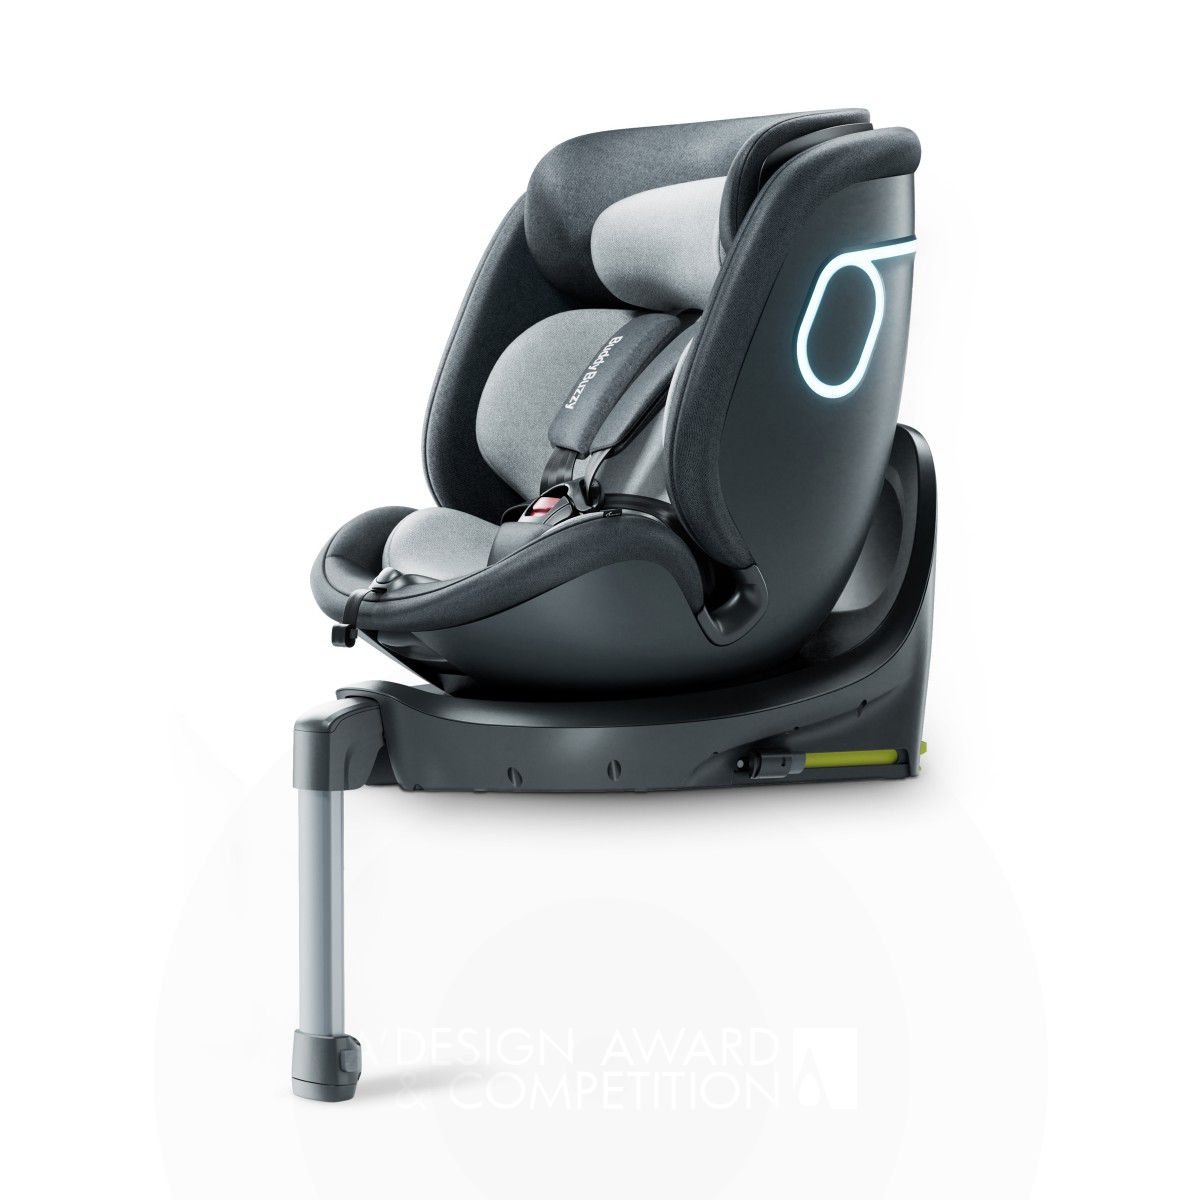 Exploration 2 Pro: Инновационное детское автомобильное кресло от Hangzhou Buddy Buzzy Co., Ltd.